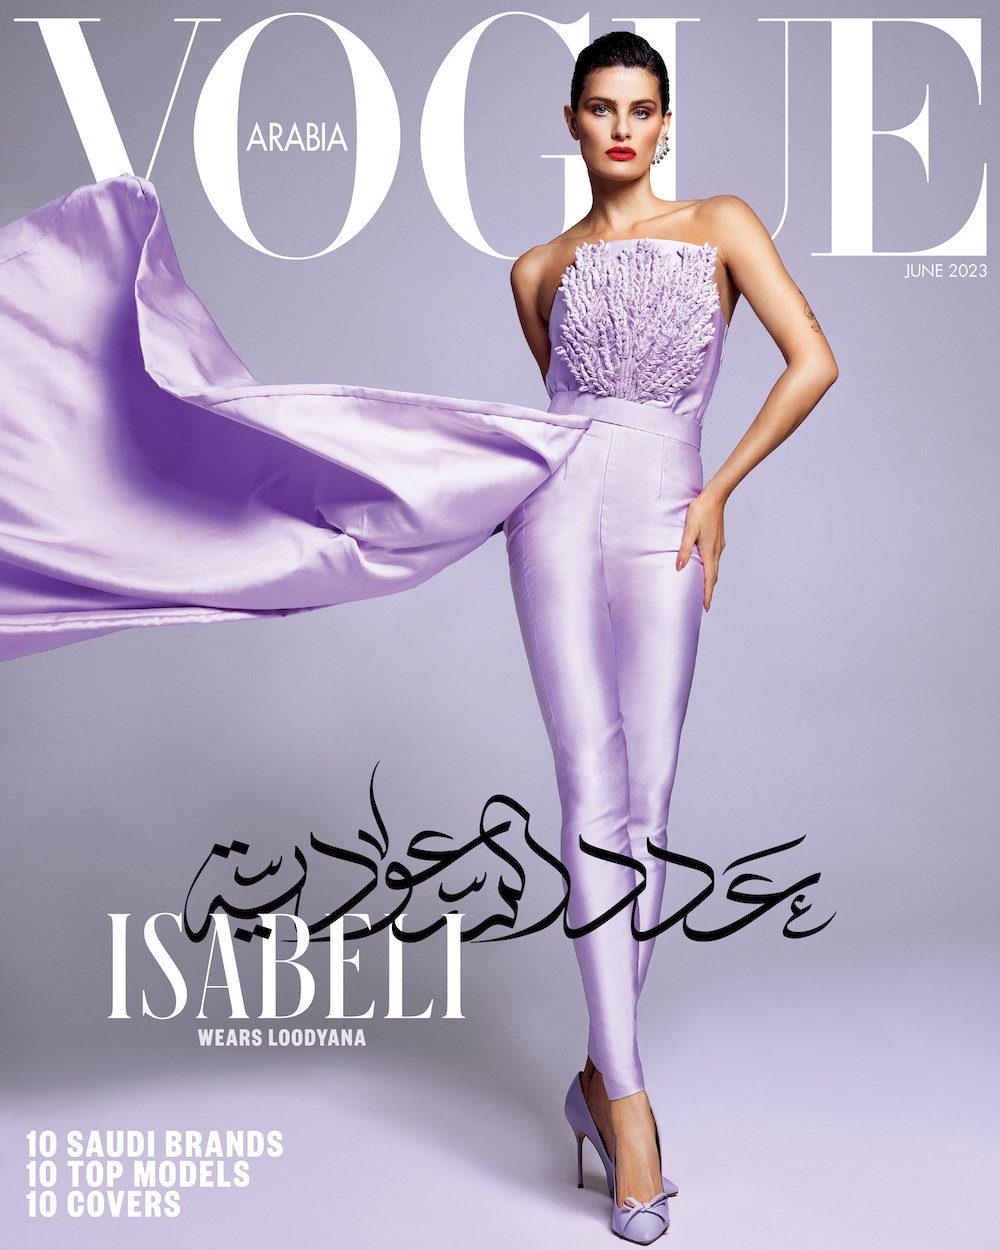 Vogue-Arabia-June-2023-Domen-Van-De-Velde-00005.jpeg